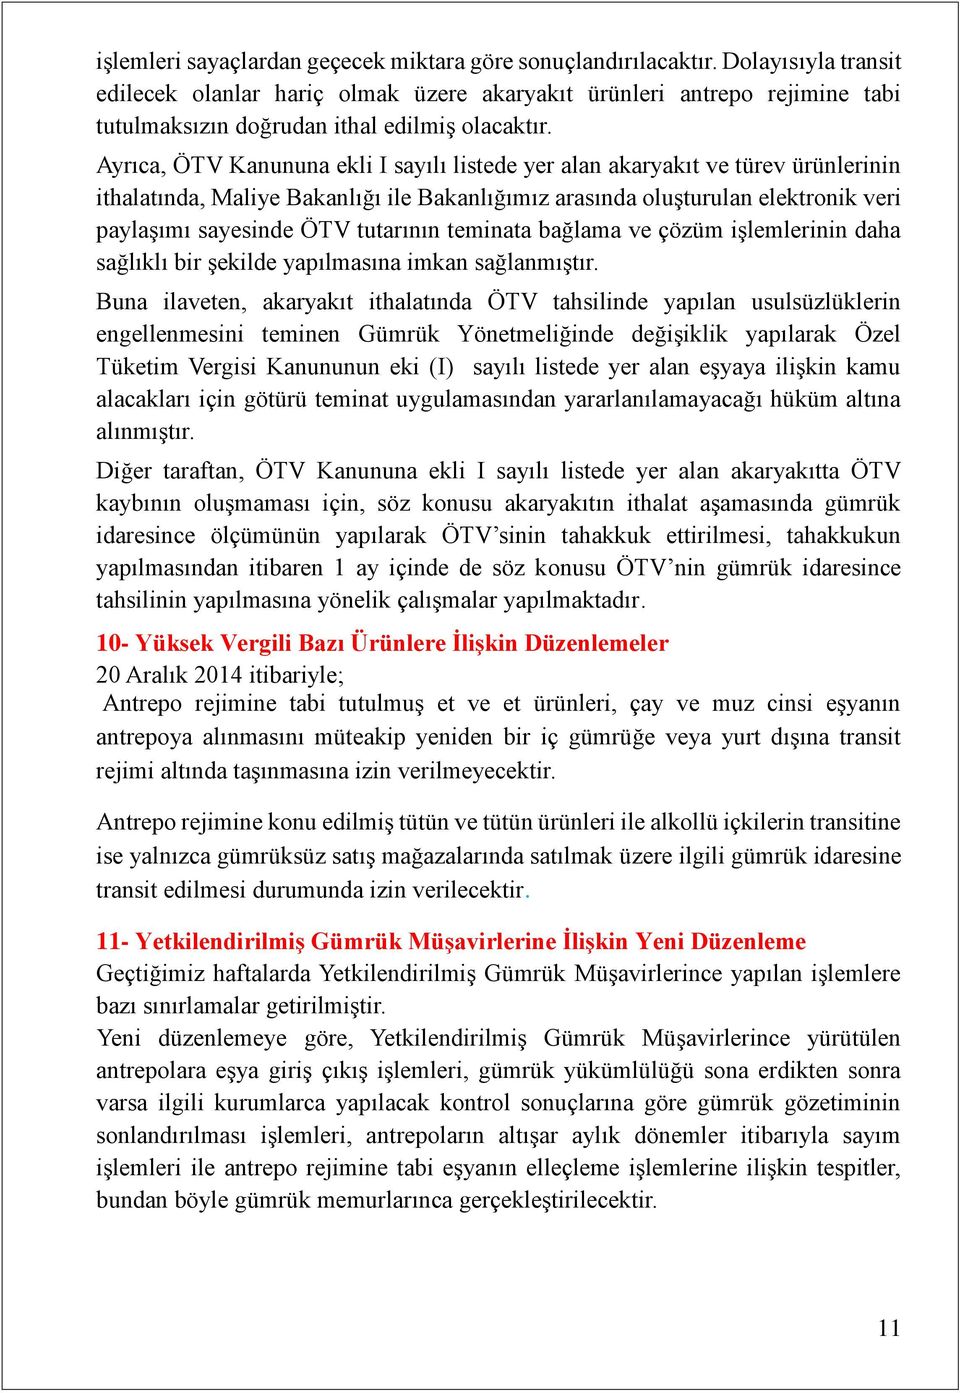 Ayrıca, ÖTV Kanununa ekli I sayılı listede yer alan akaryakıt ve türev ürünlerinin ithalatında, Maliye Bakanlığı ile Bakanlığımız arasında oluşturulan elektronik veri paylaşımı sayesinde ÖTV